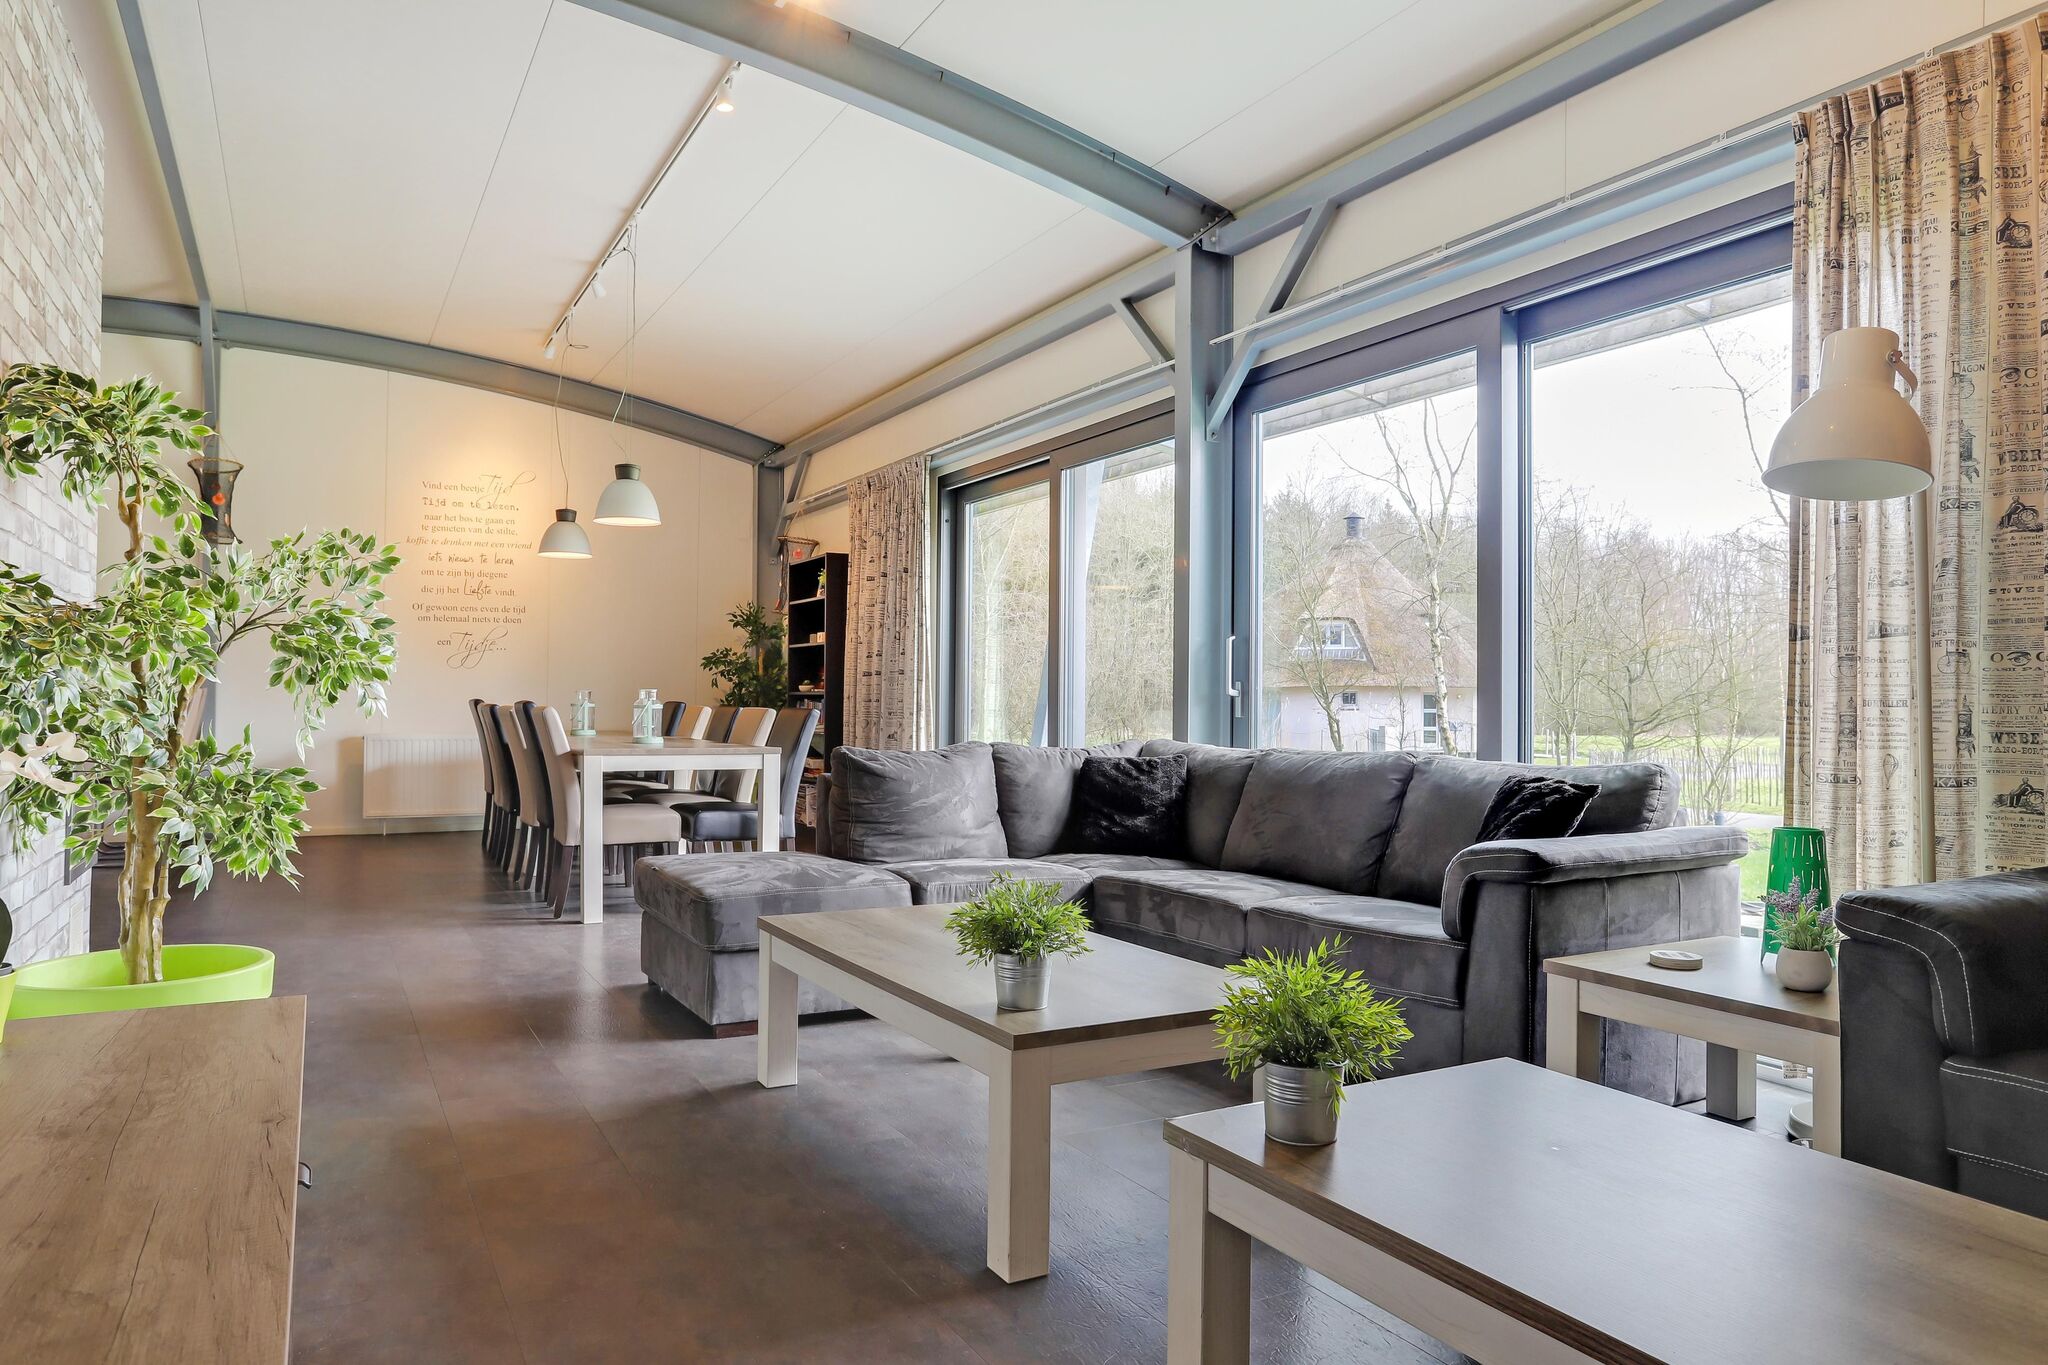 Villa de groupe spacieuse et moderne dans la nature de Noordwoldse